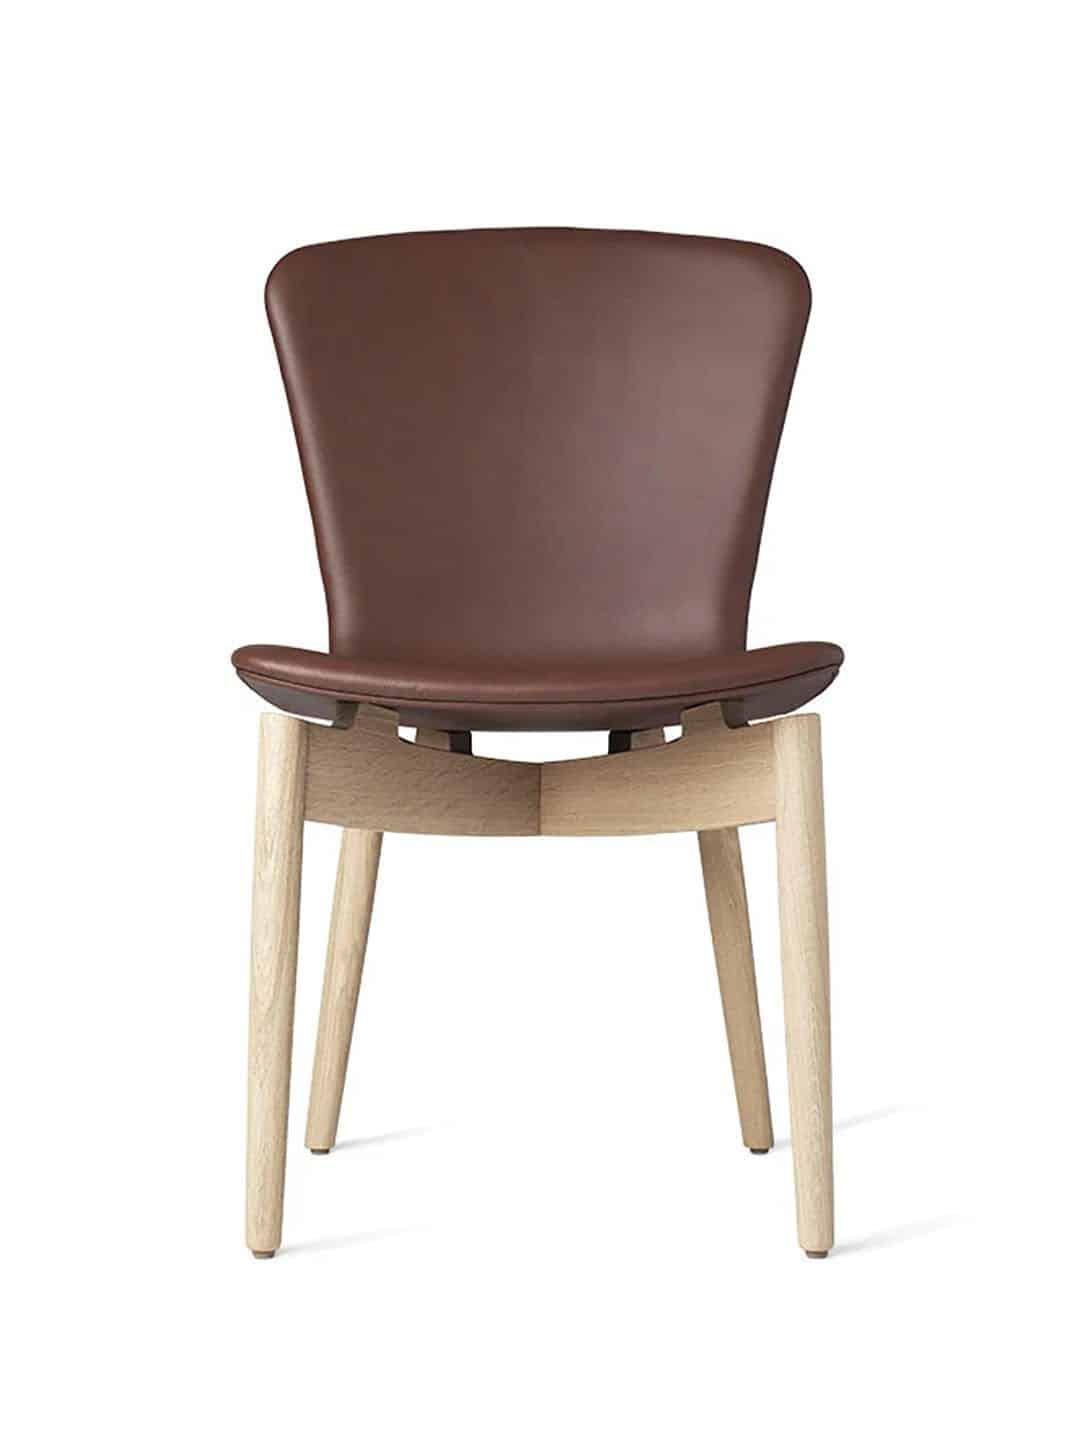 Обеденный стул Mater Shell, мыльный дуб коньячного цвета вид спереди на белом фоне